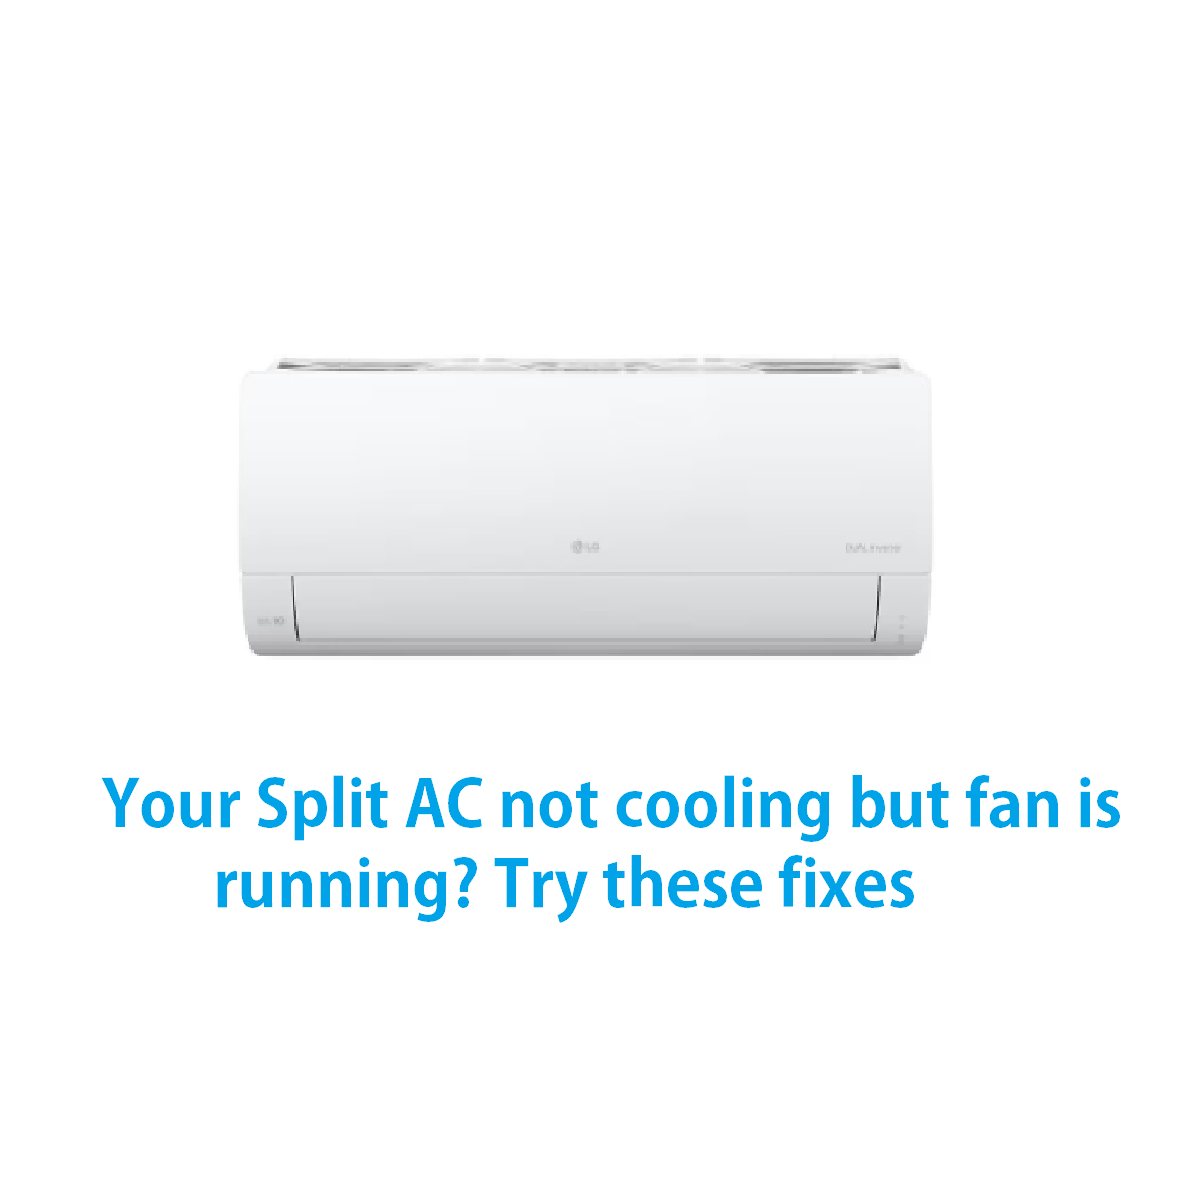 Split AC not cooling but fan is running